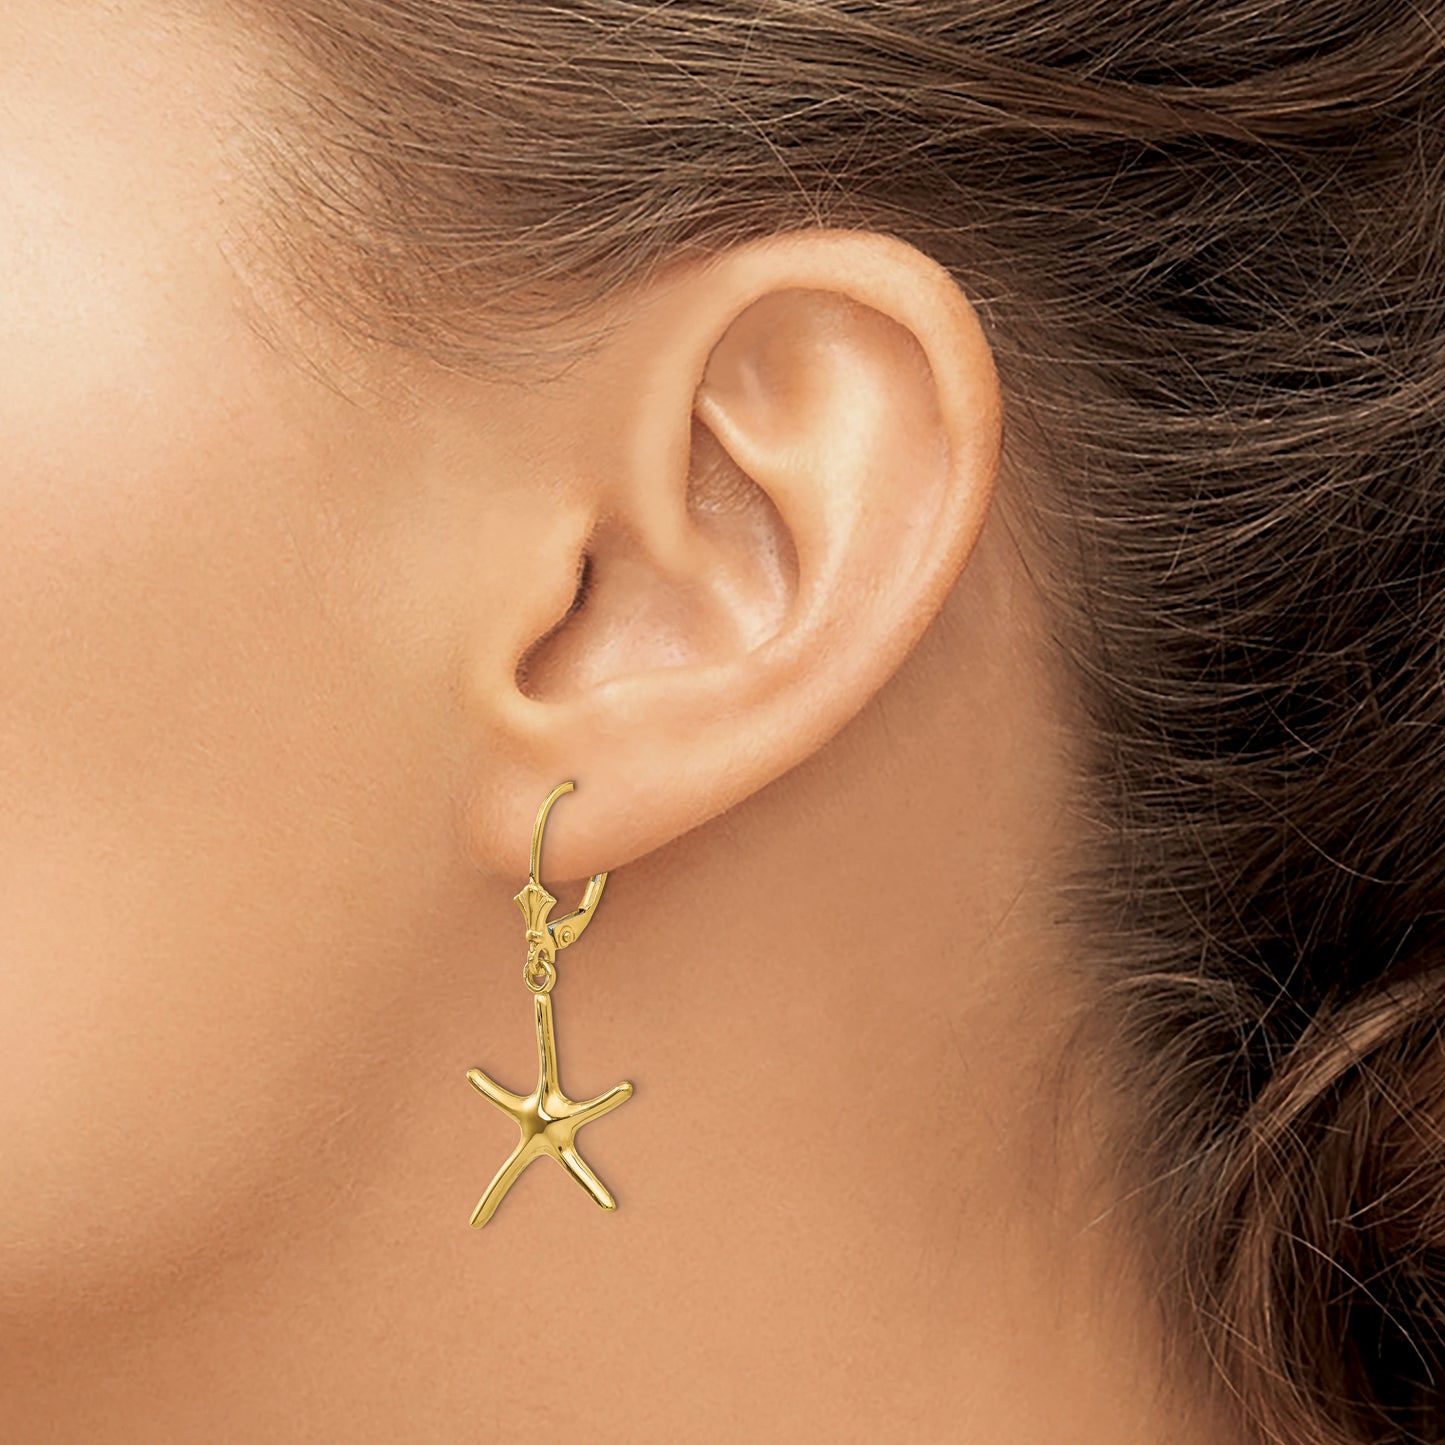 14K Dancing Starfish Leverback Earrings